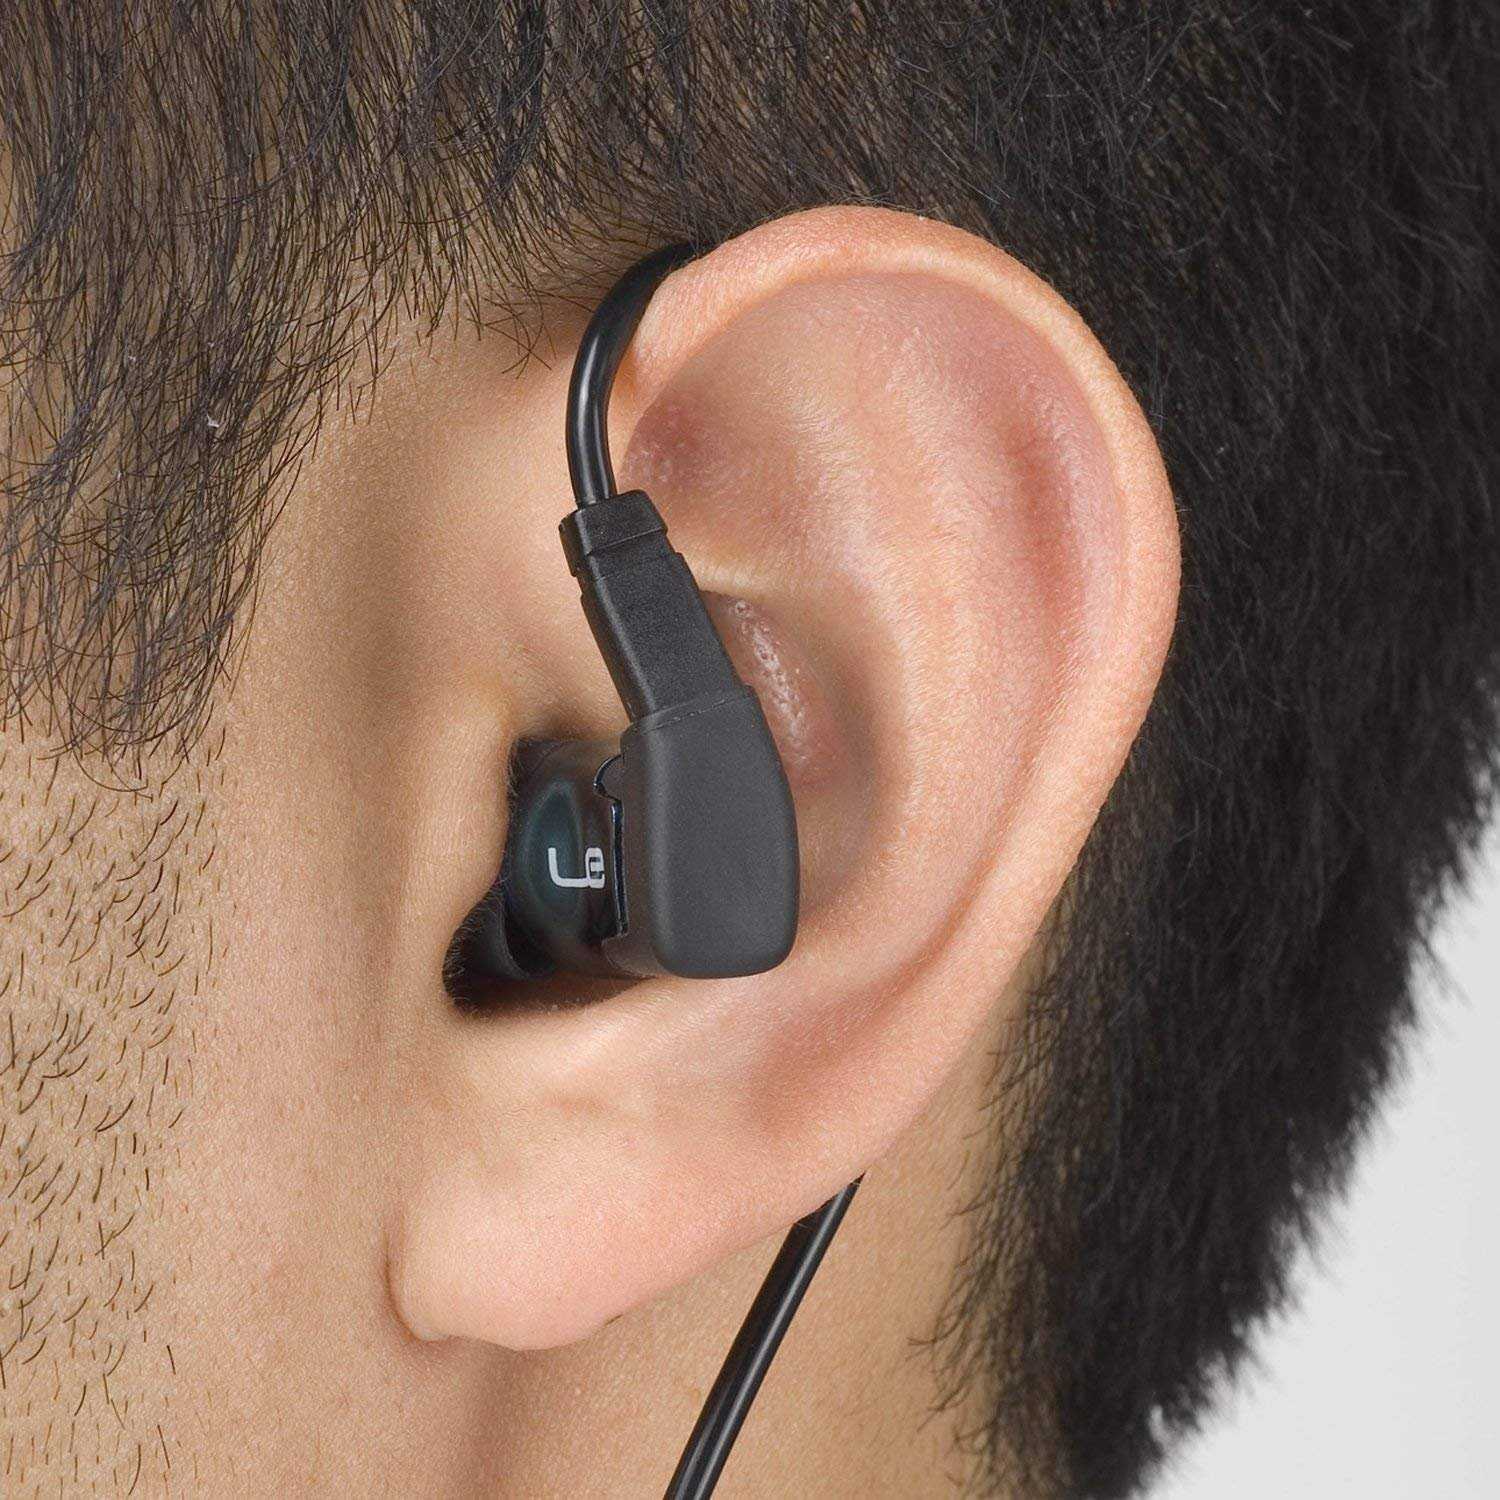 Как носить беспроводные наушники, как правильно вставлять в уши